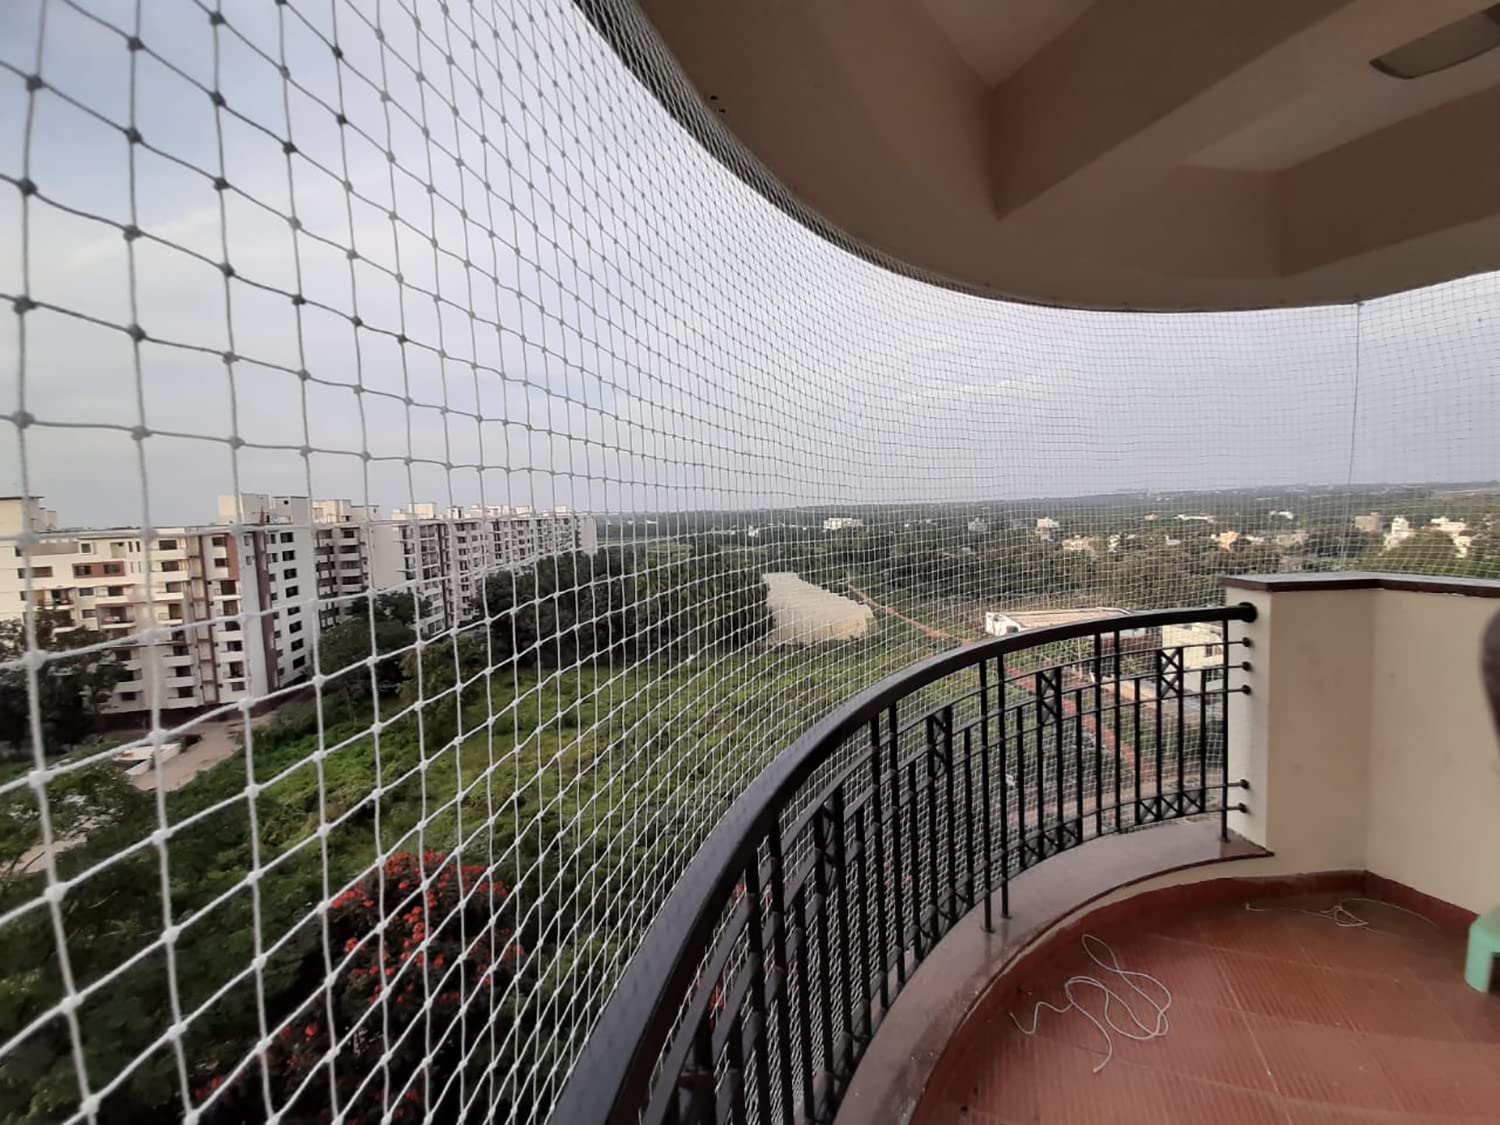 Get Bird Net For Balcony In Delhi | Pigeon Net For Balcony In Delhi